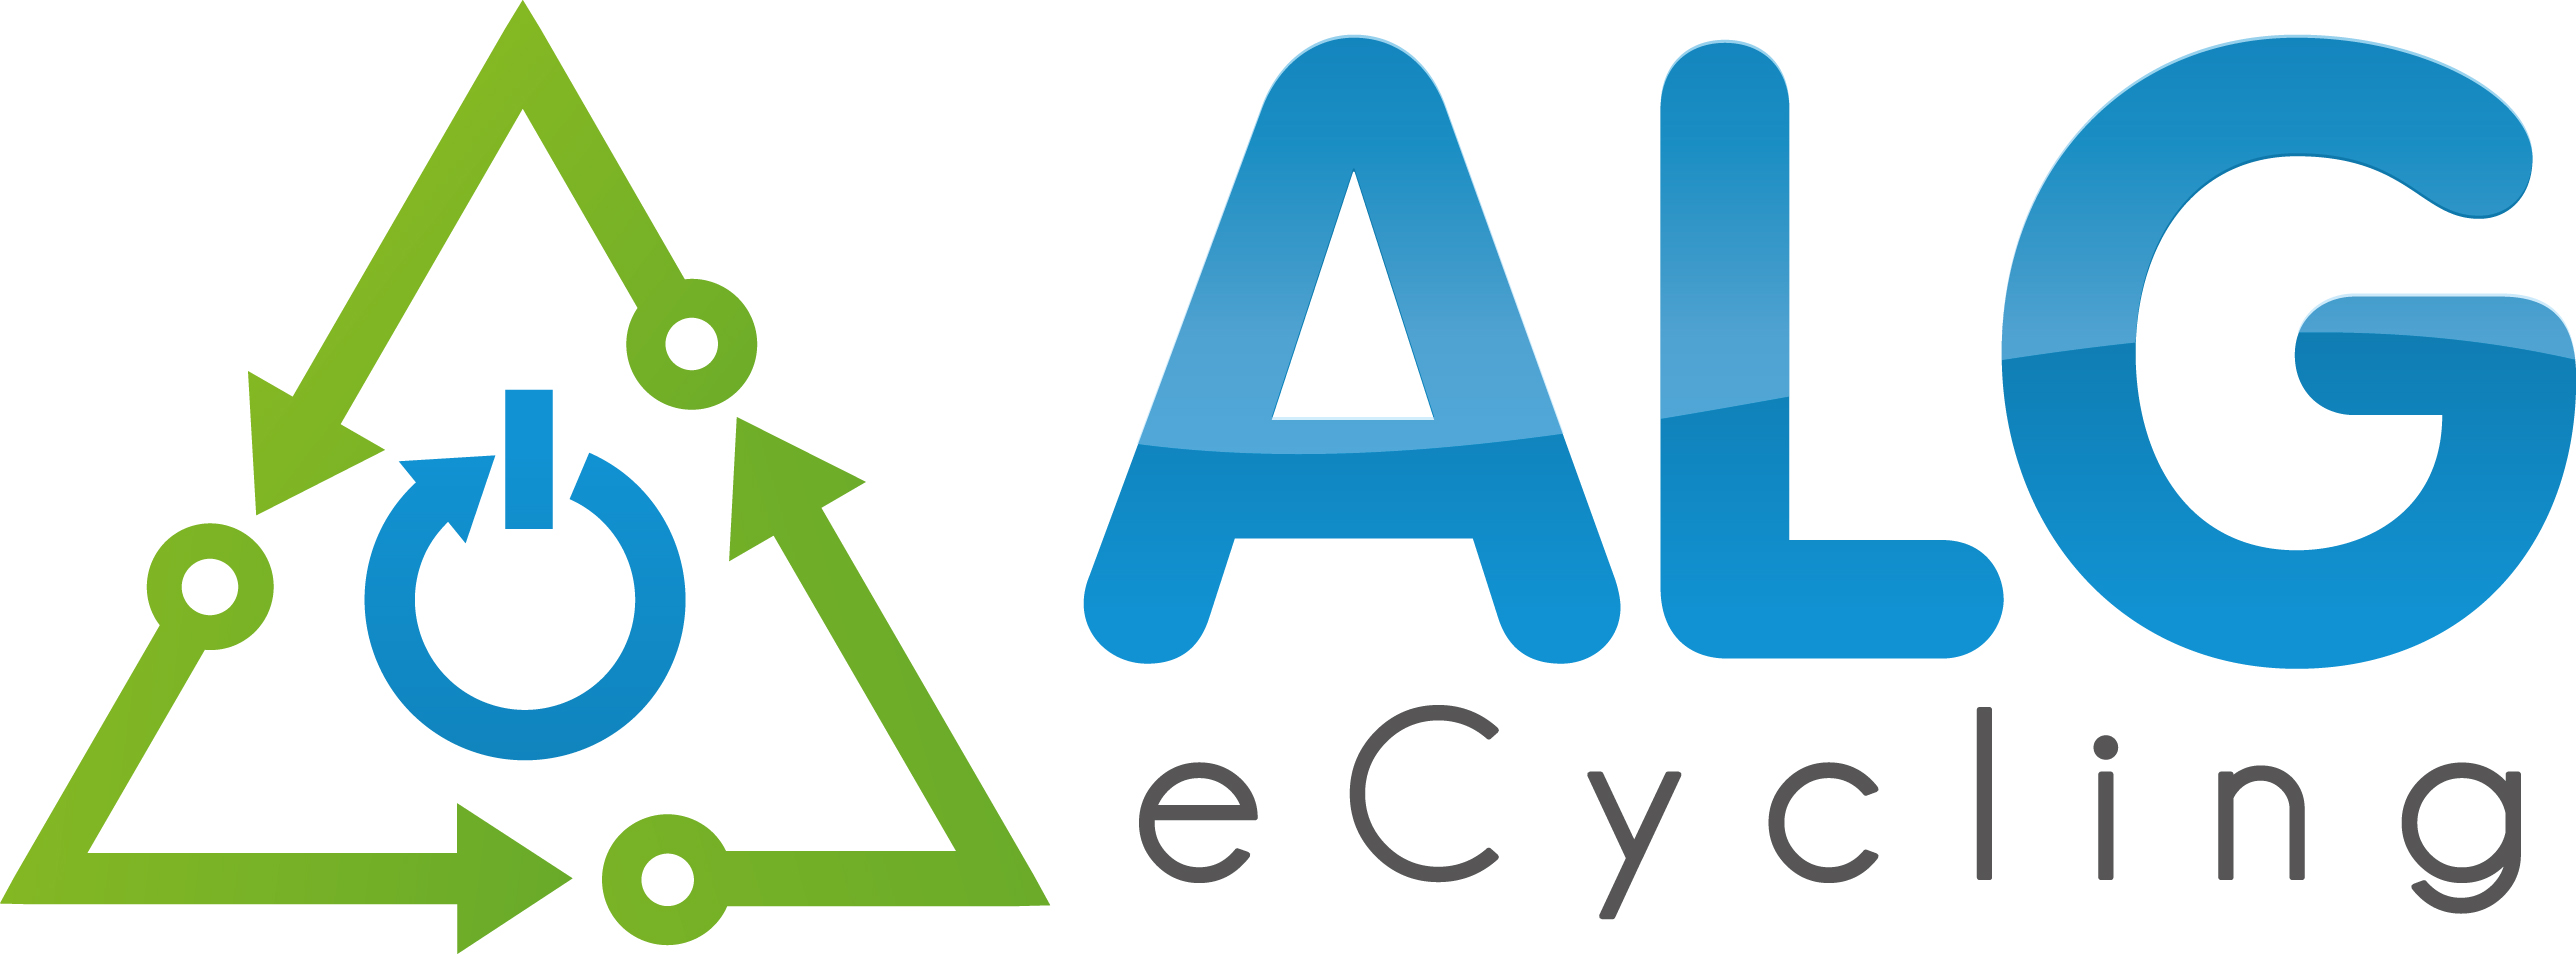 Logo ALGecycling.jpg